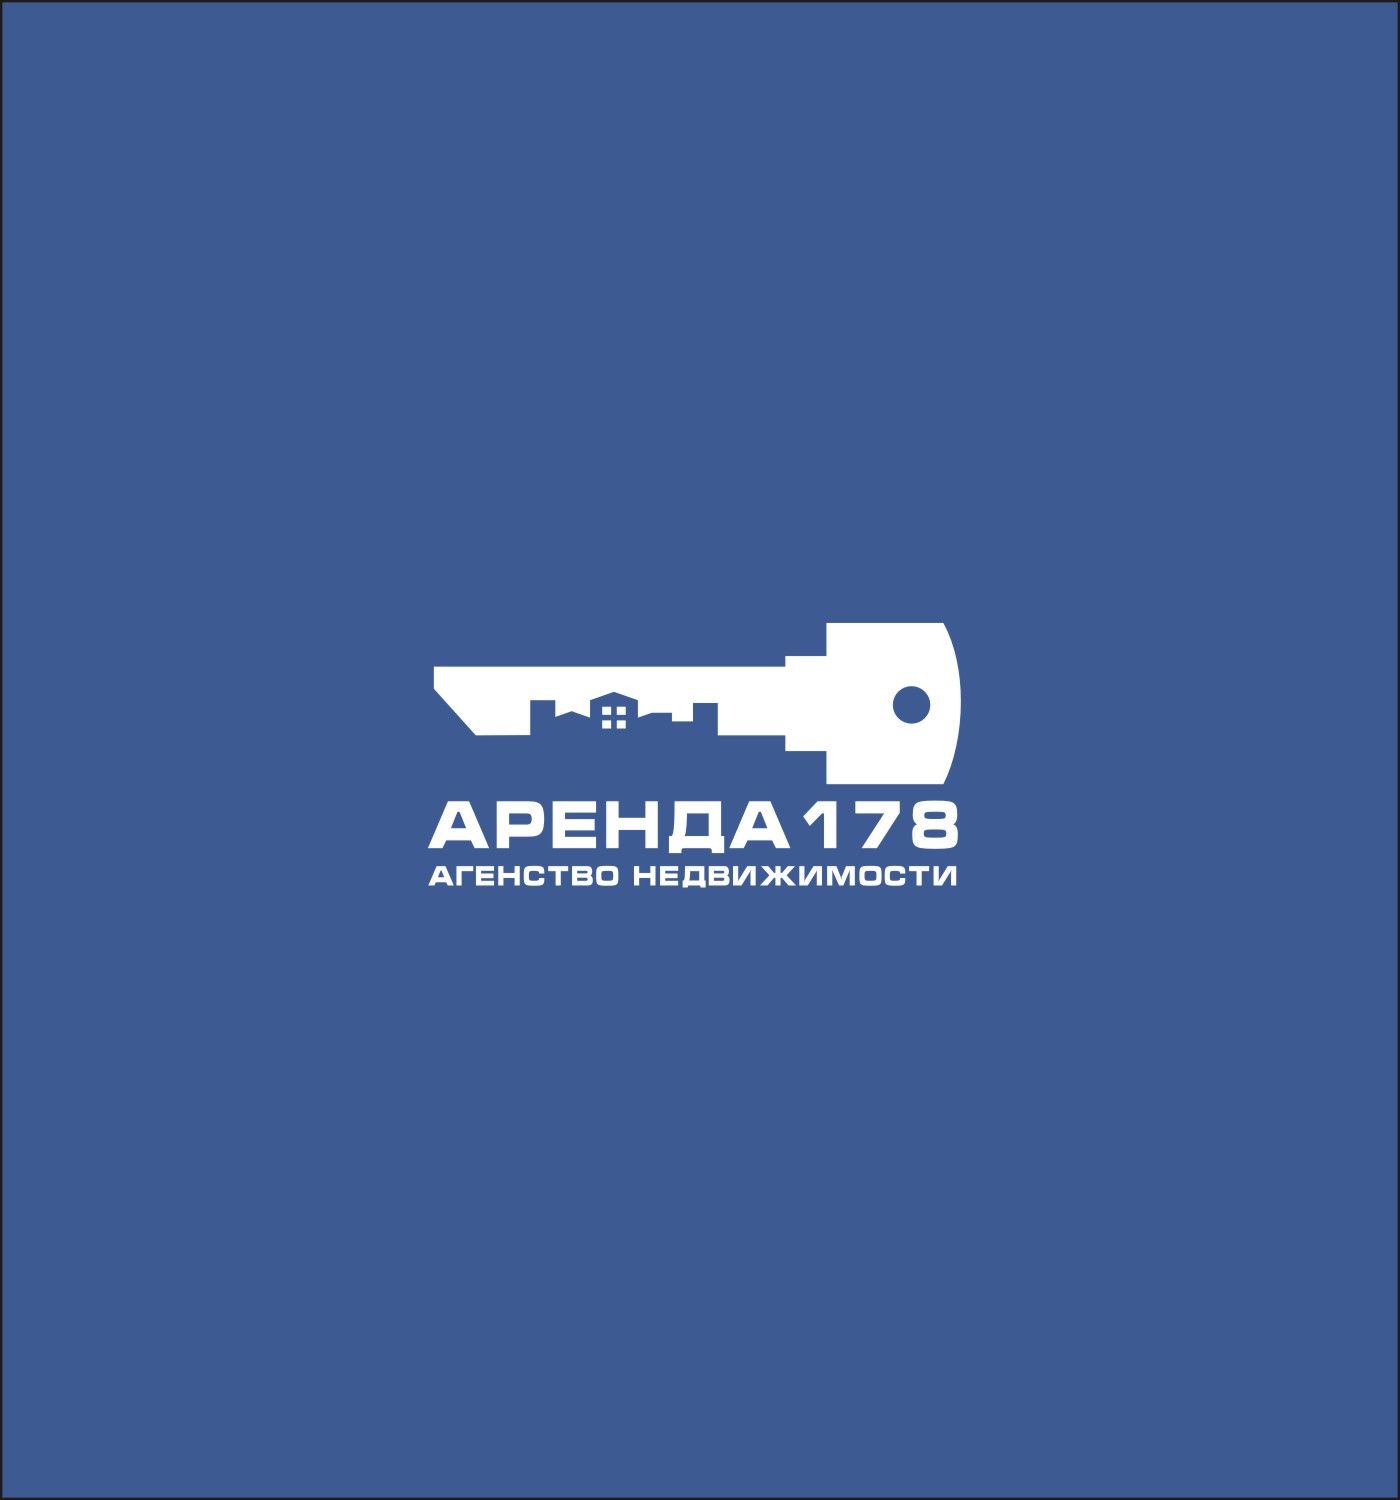 Логотип для Аренда178 - дизайнер s-one